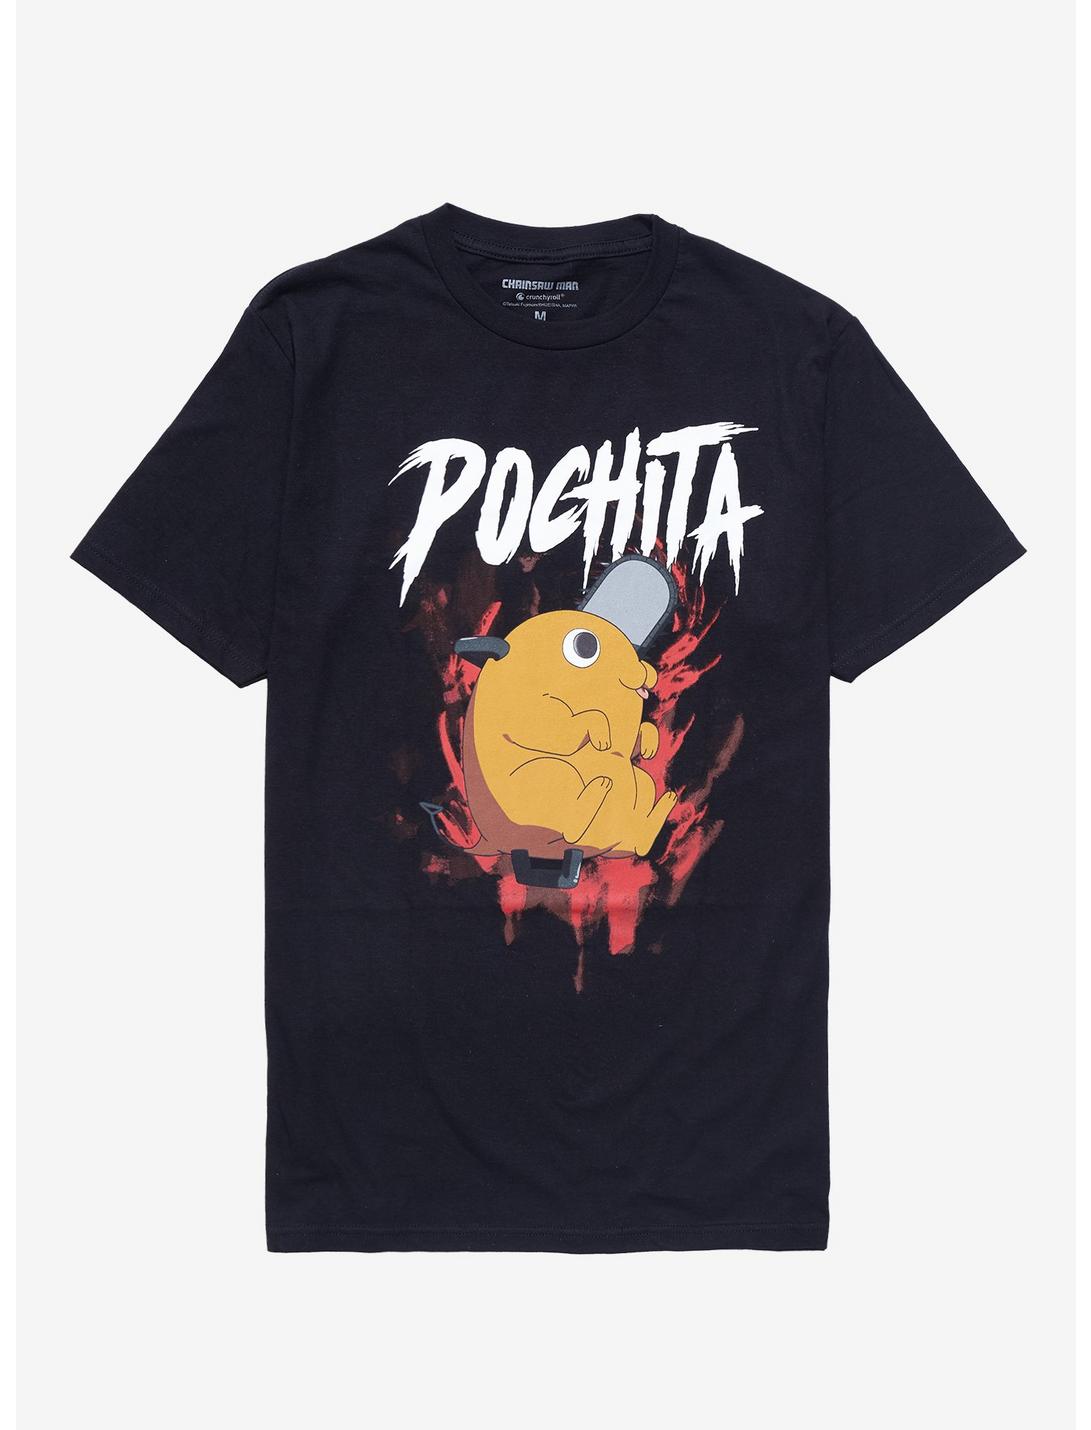 Chainsaw Man Pochita Metal T-Shirt, BLACK, hi-res